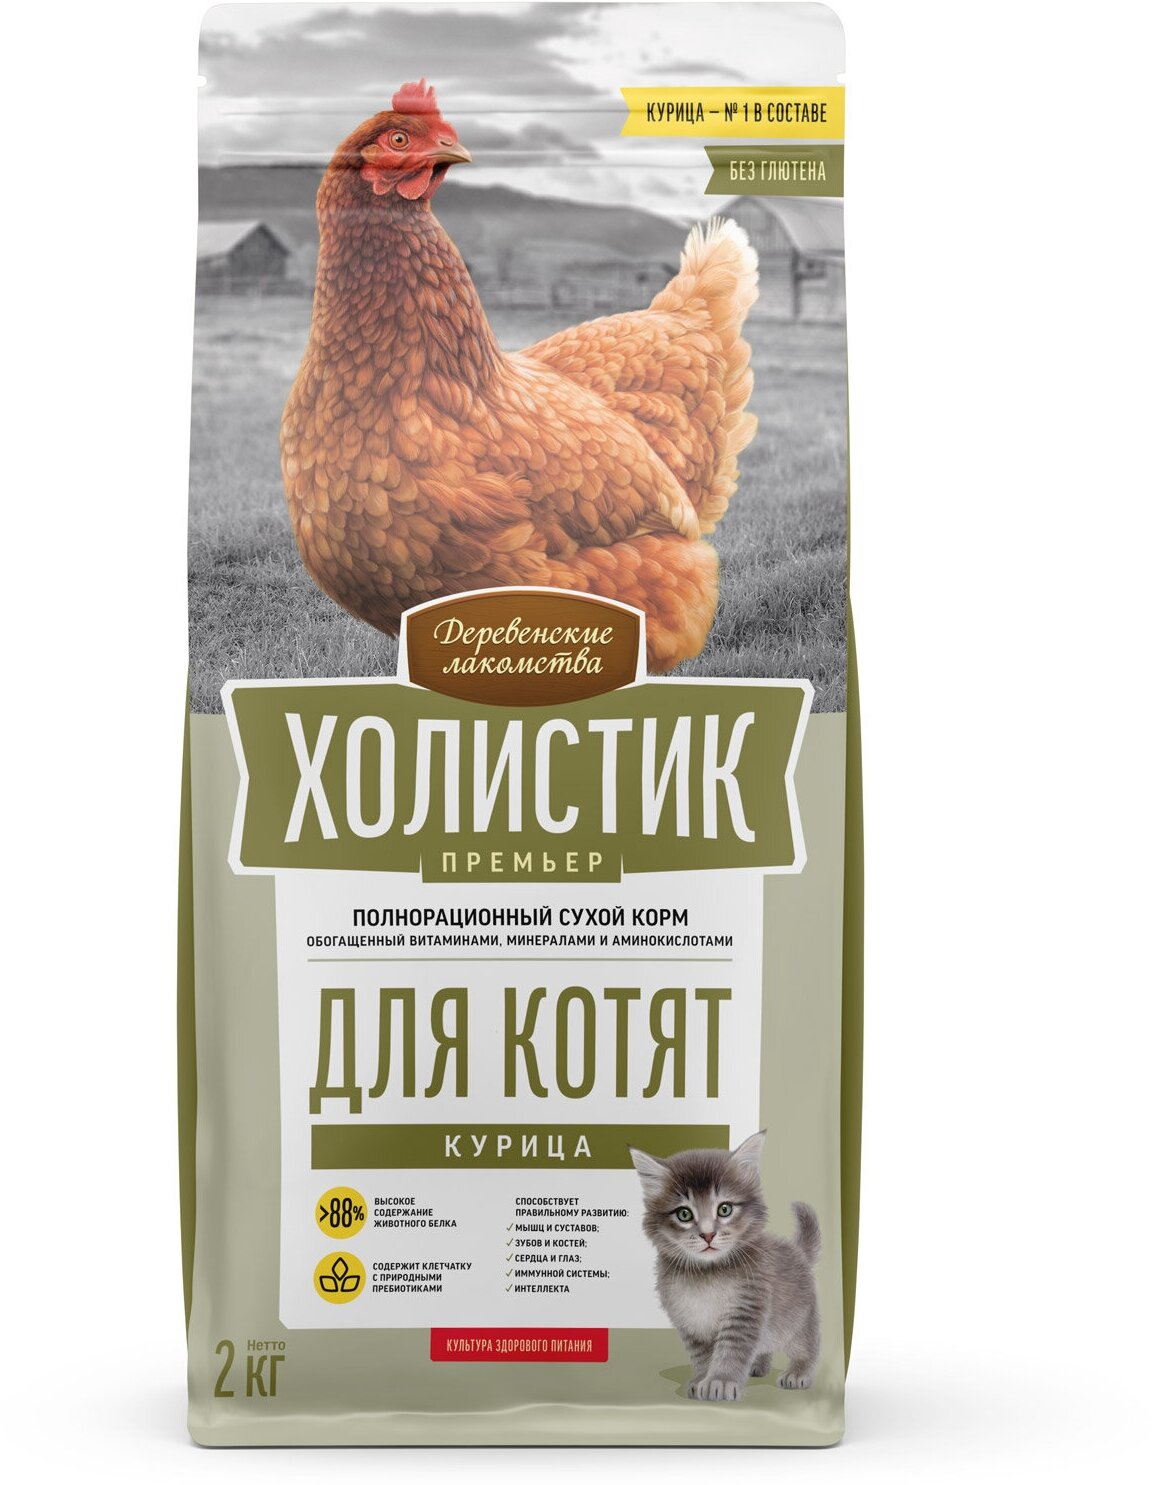 Деревенские лакомства Холистик Премьер корм для котят, курица 2 кг